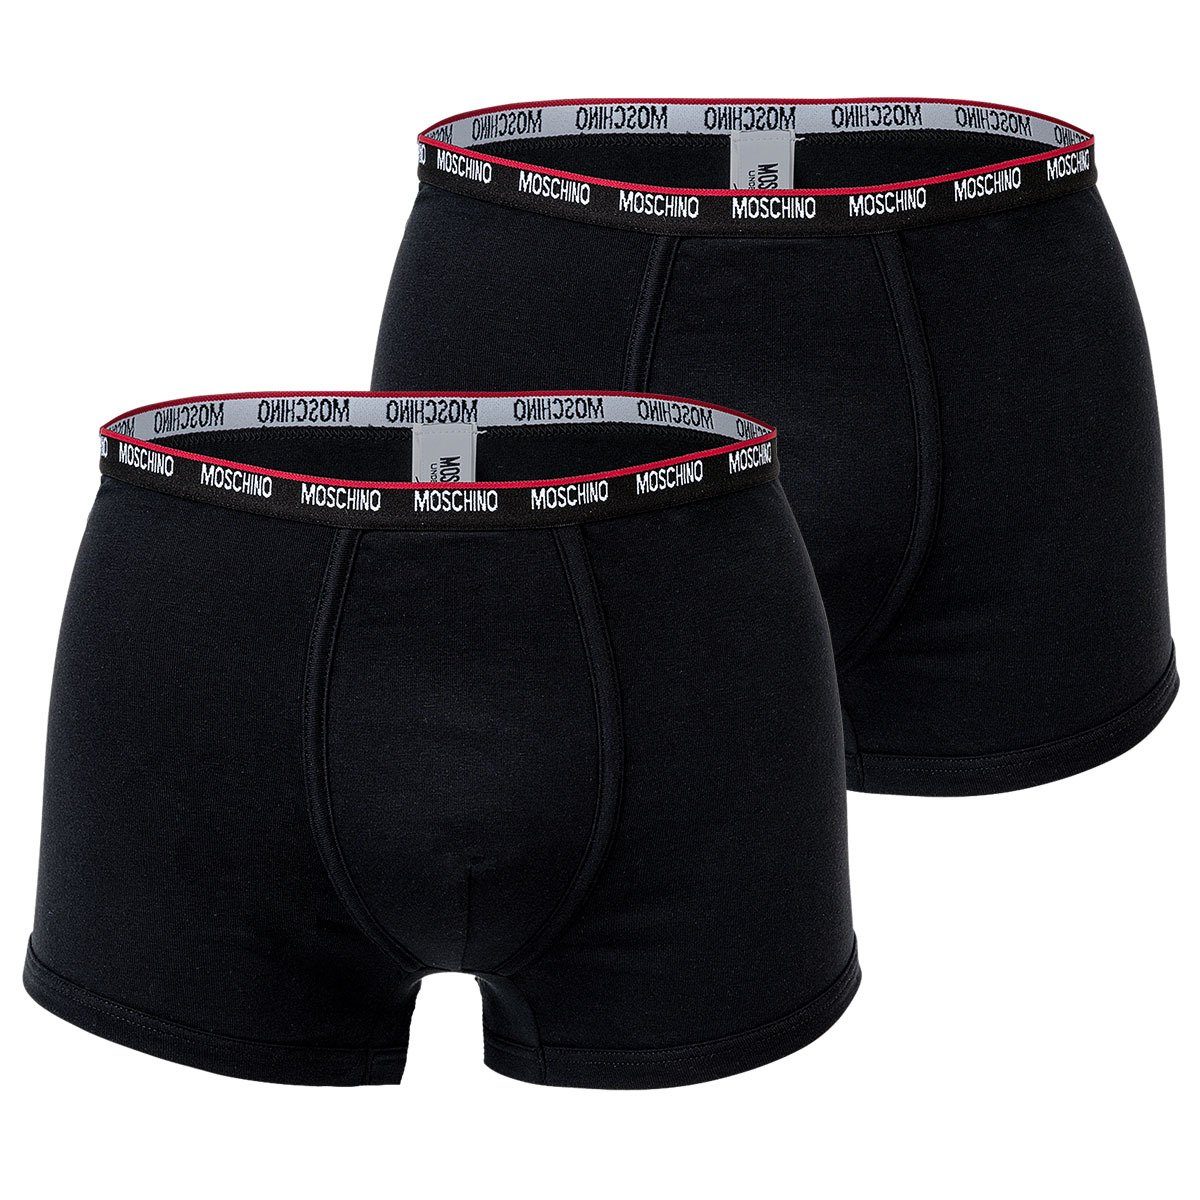 Moschino Boxer Herren Shorts 2er Pack - Trunks, Unterhose, Cotton Schwarz | Boxershorts